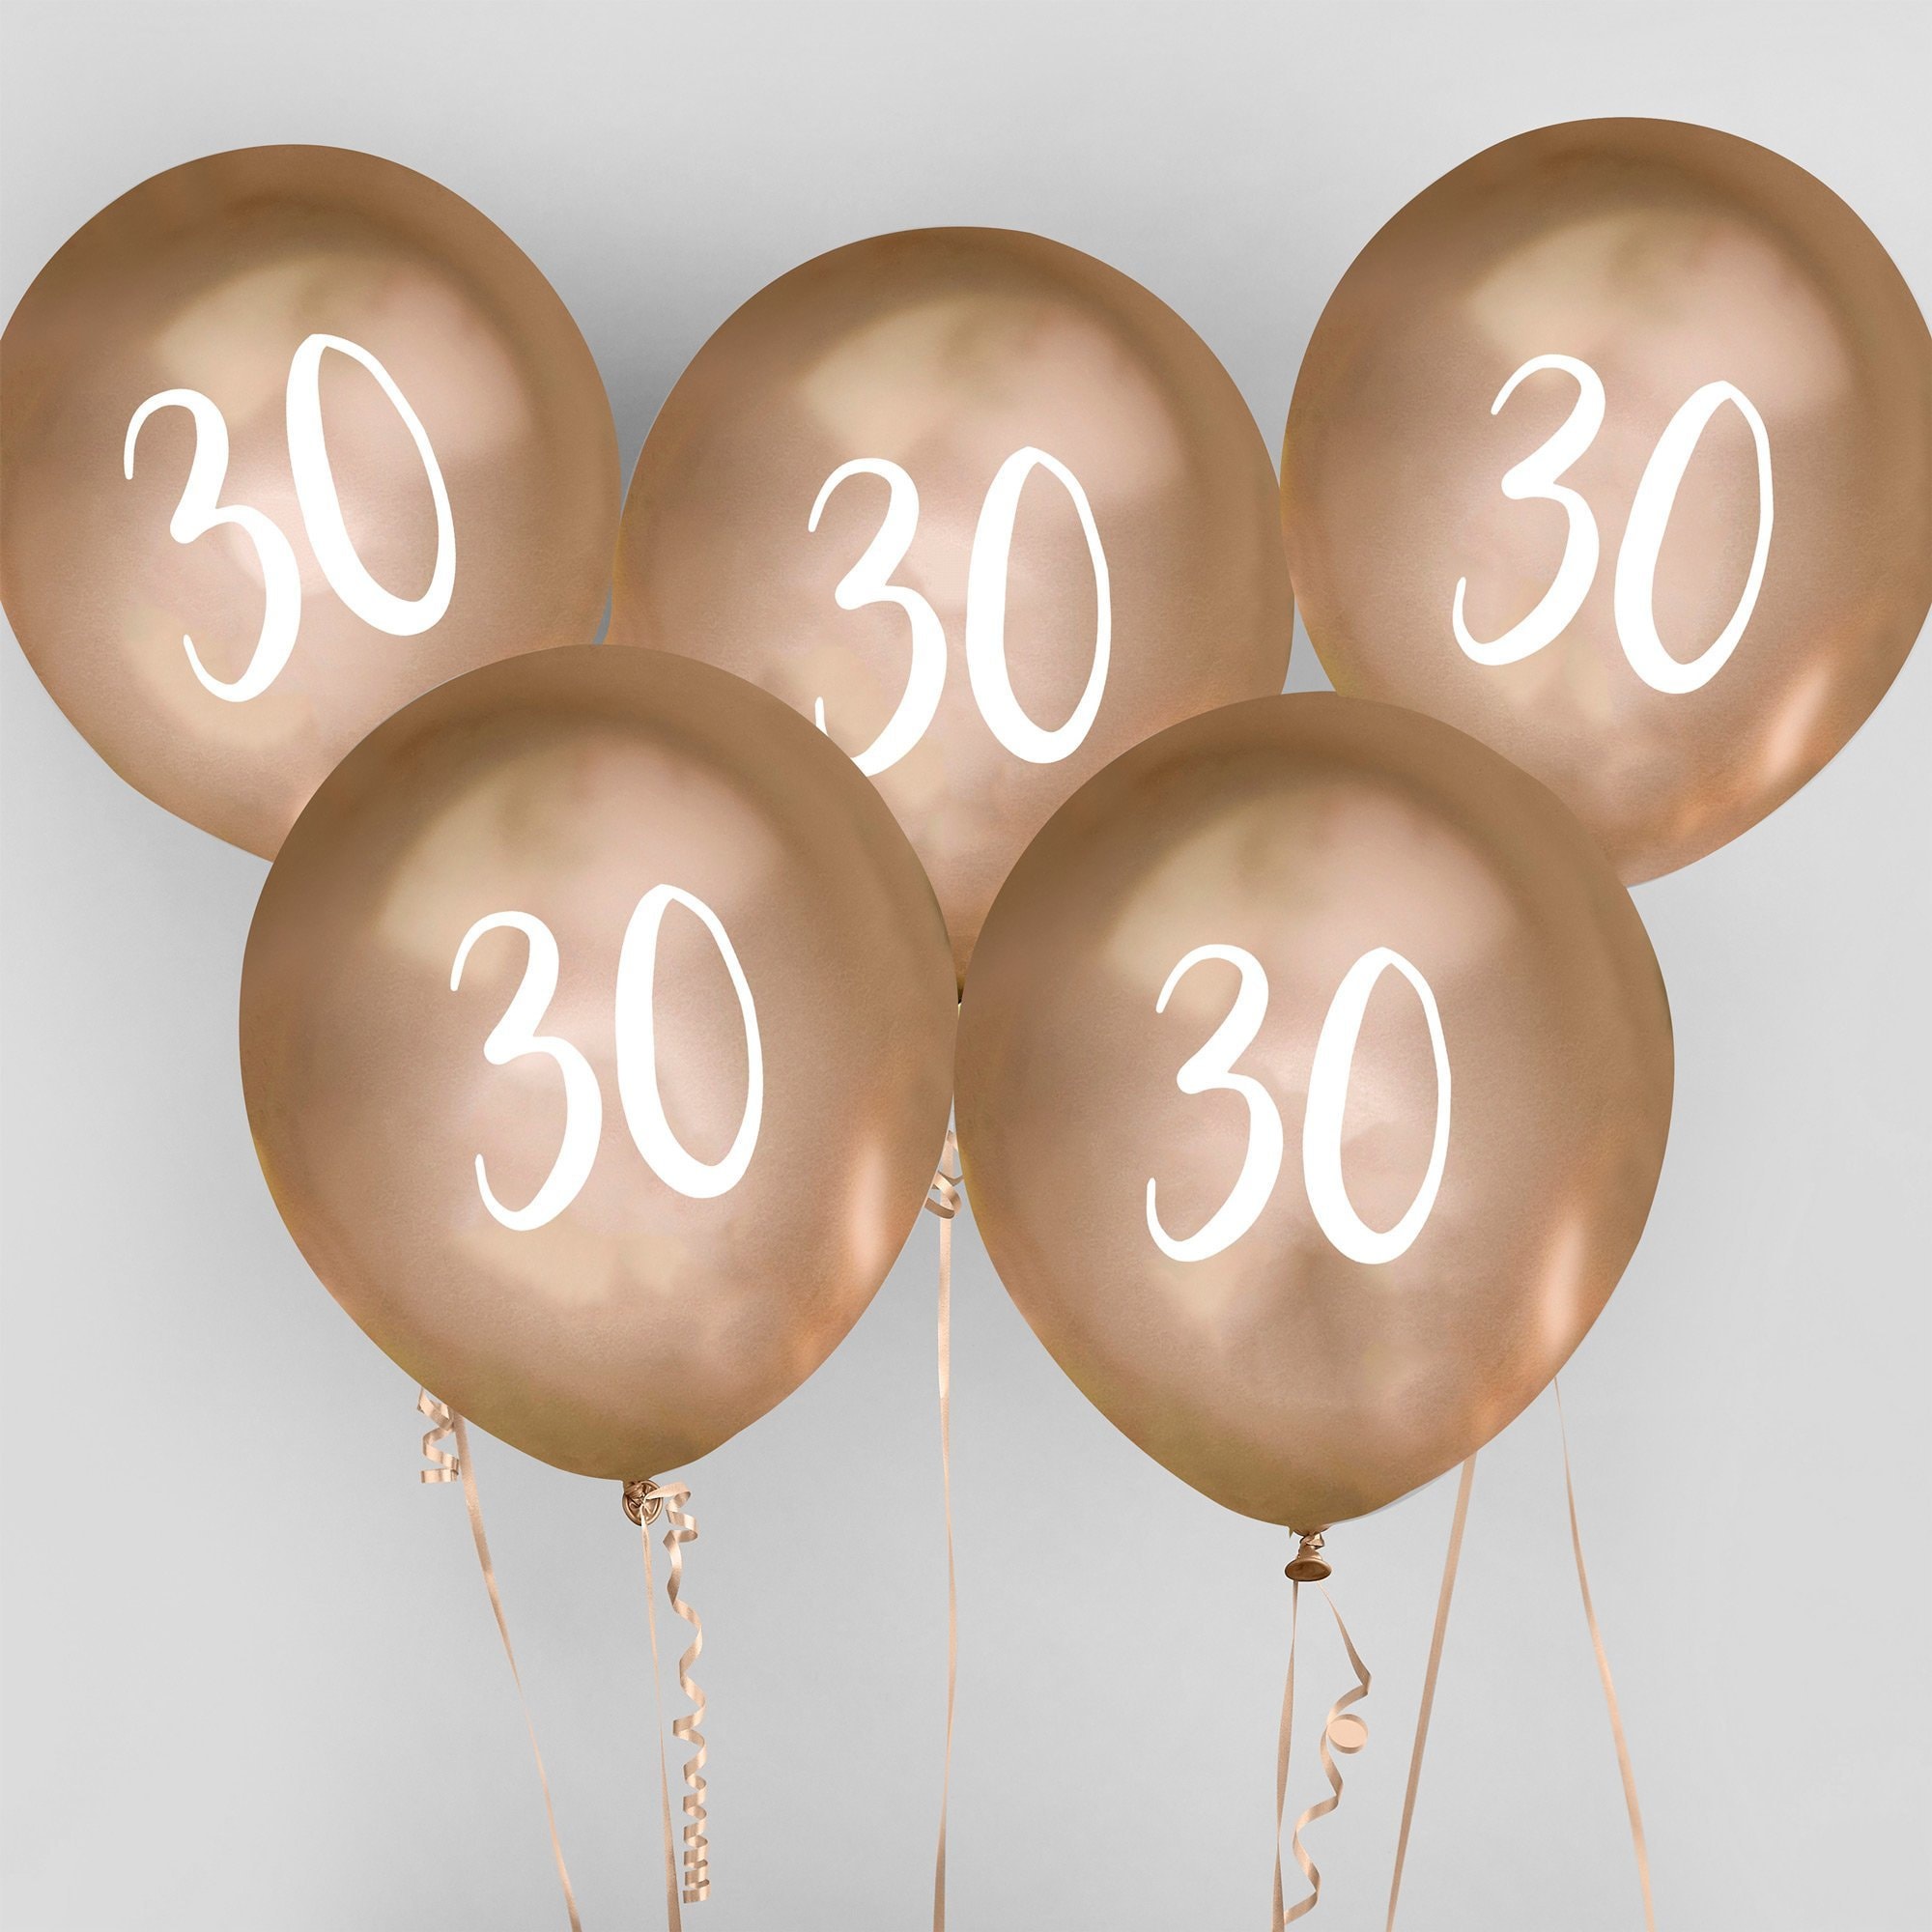 R/BA3012 - Chiffre anniversaire 25 avec ballons dorés de 86cm.